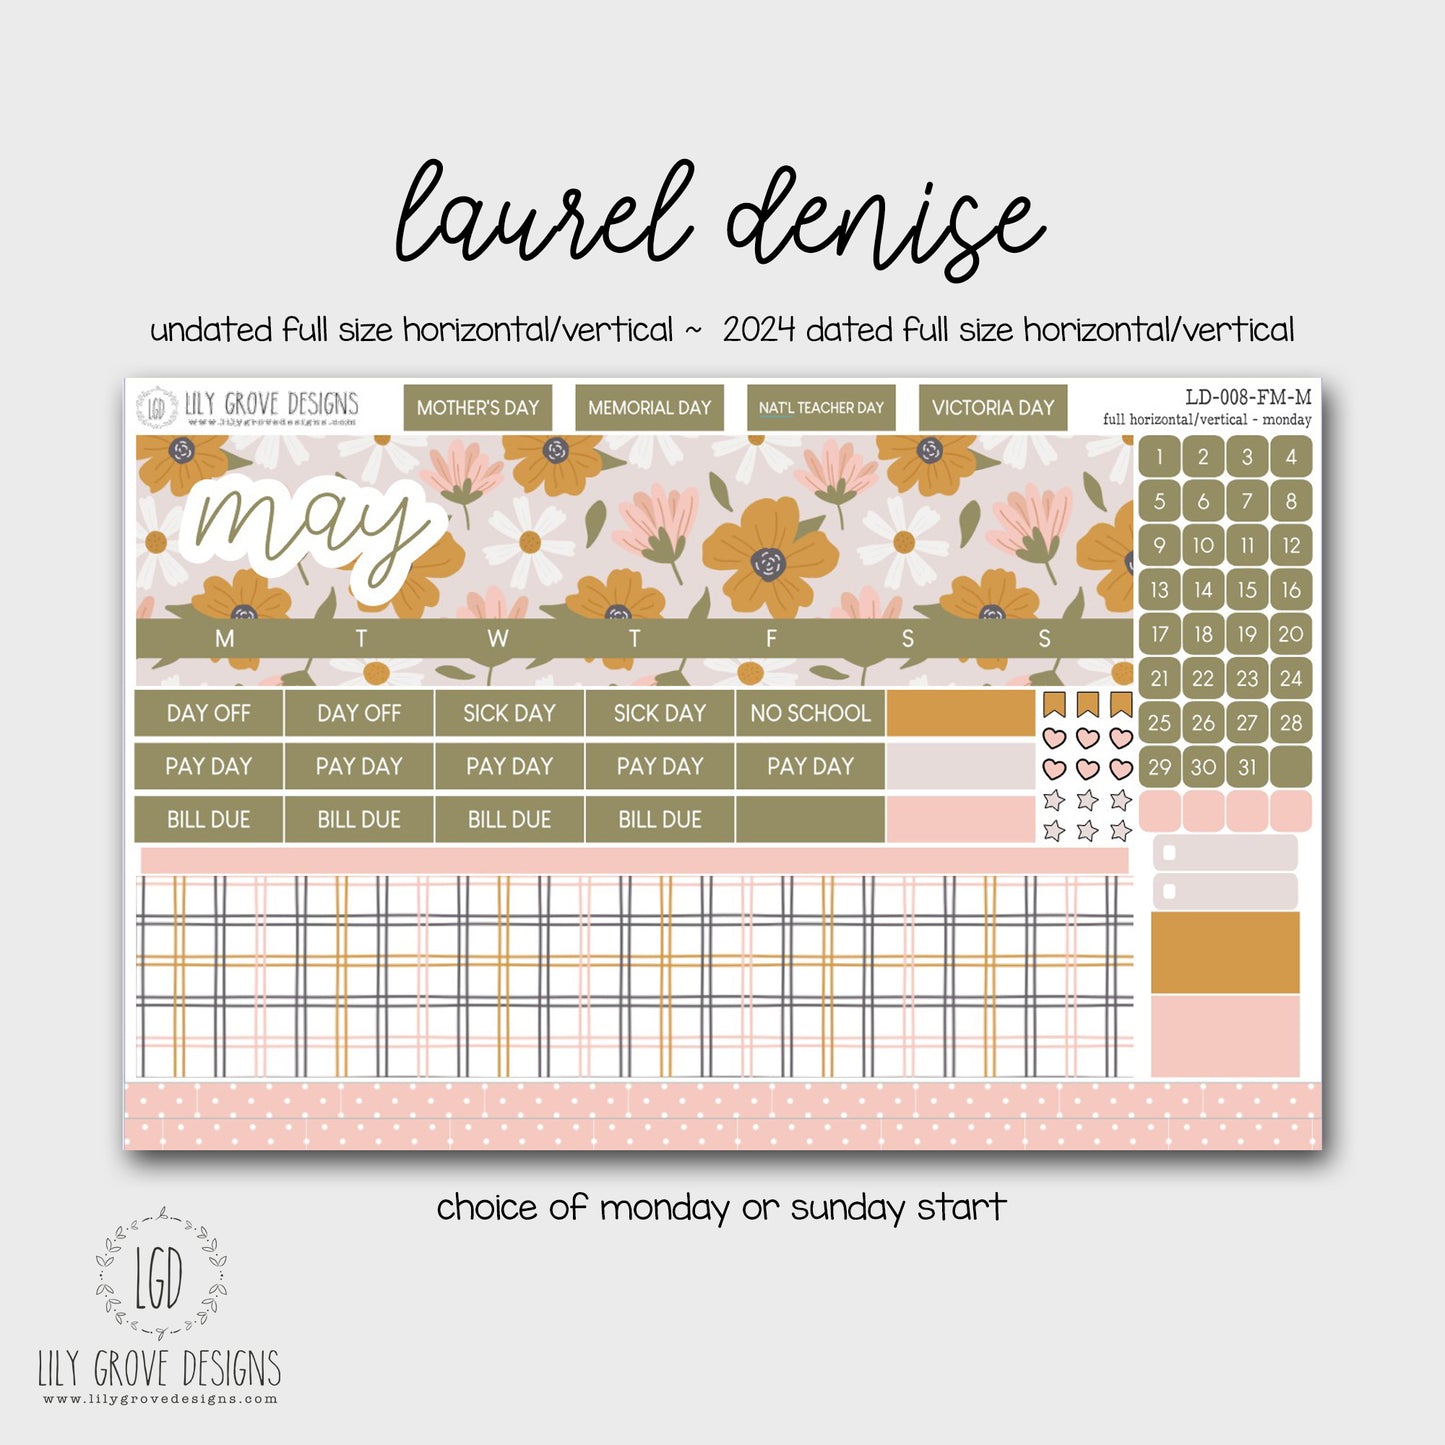 LD-008 - May Laurel Denise Monthly Kit - Full Horizontal - Full Vertical